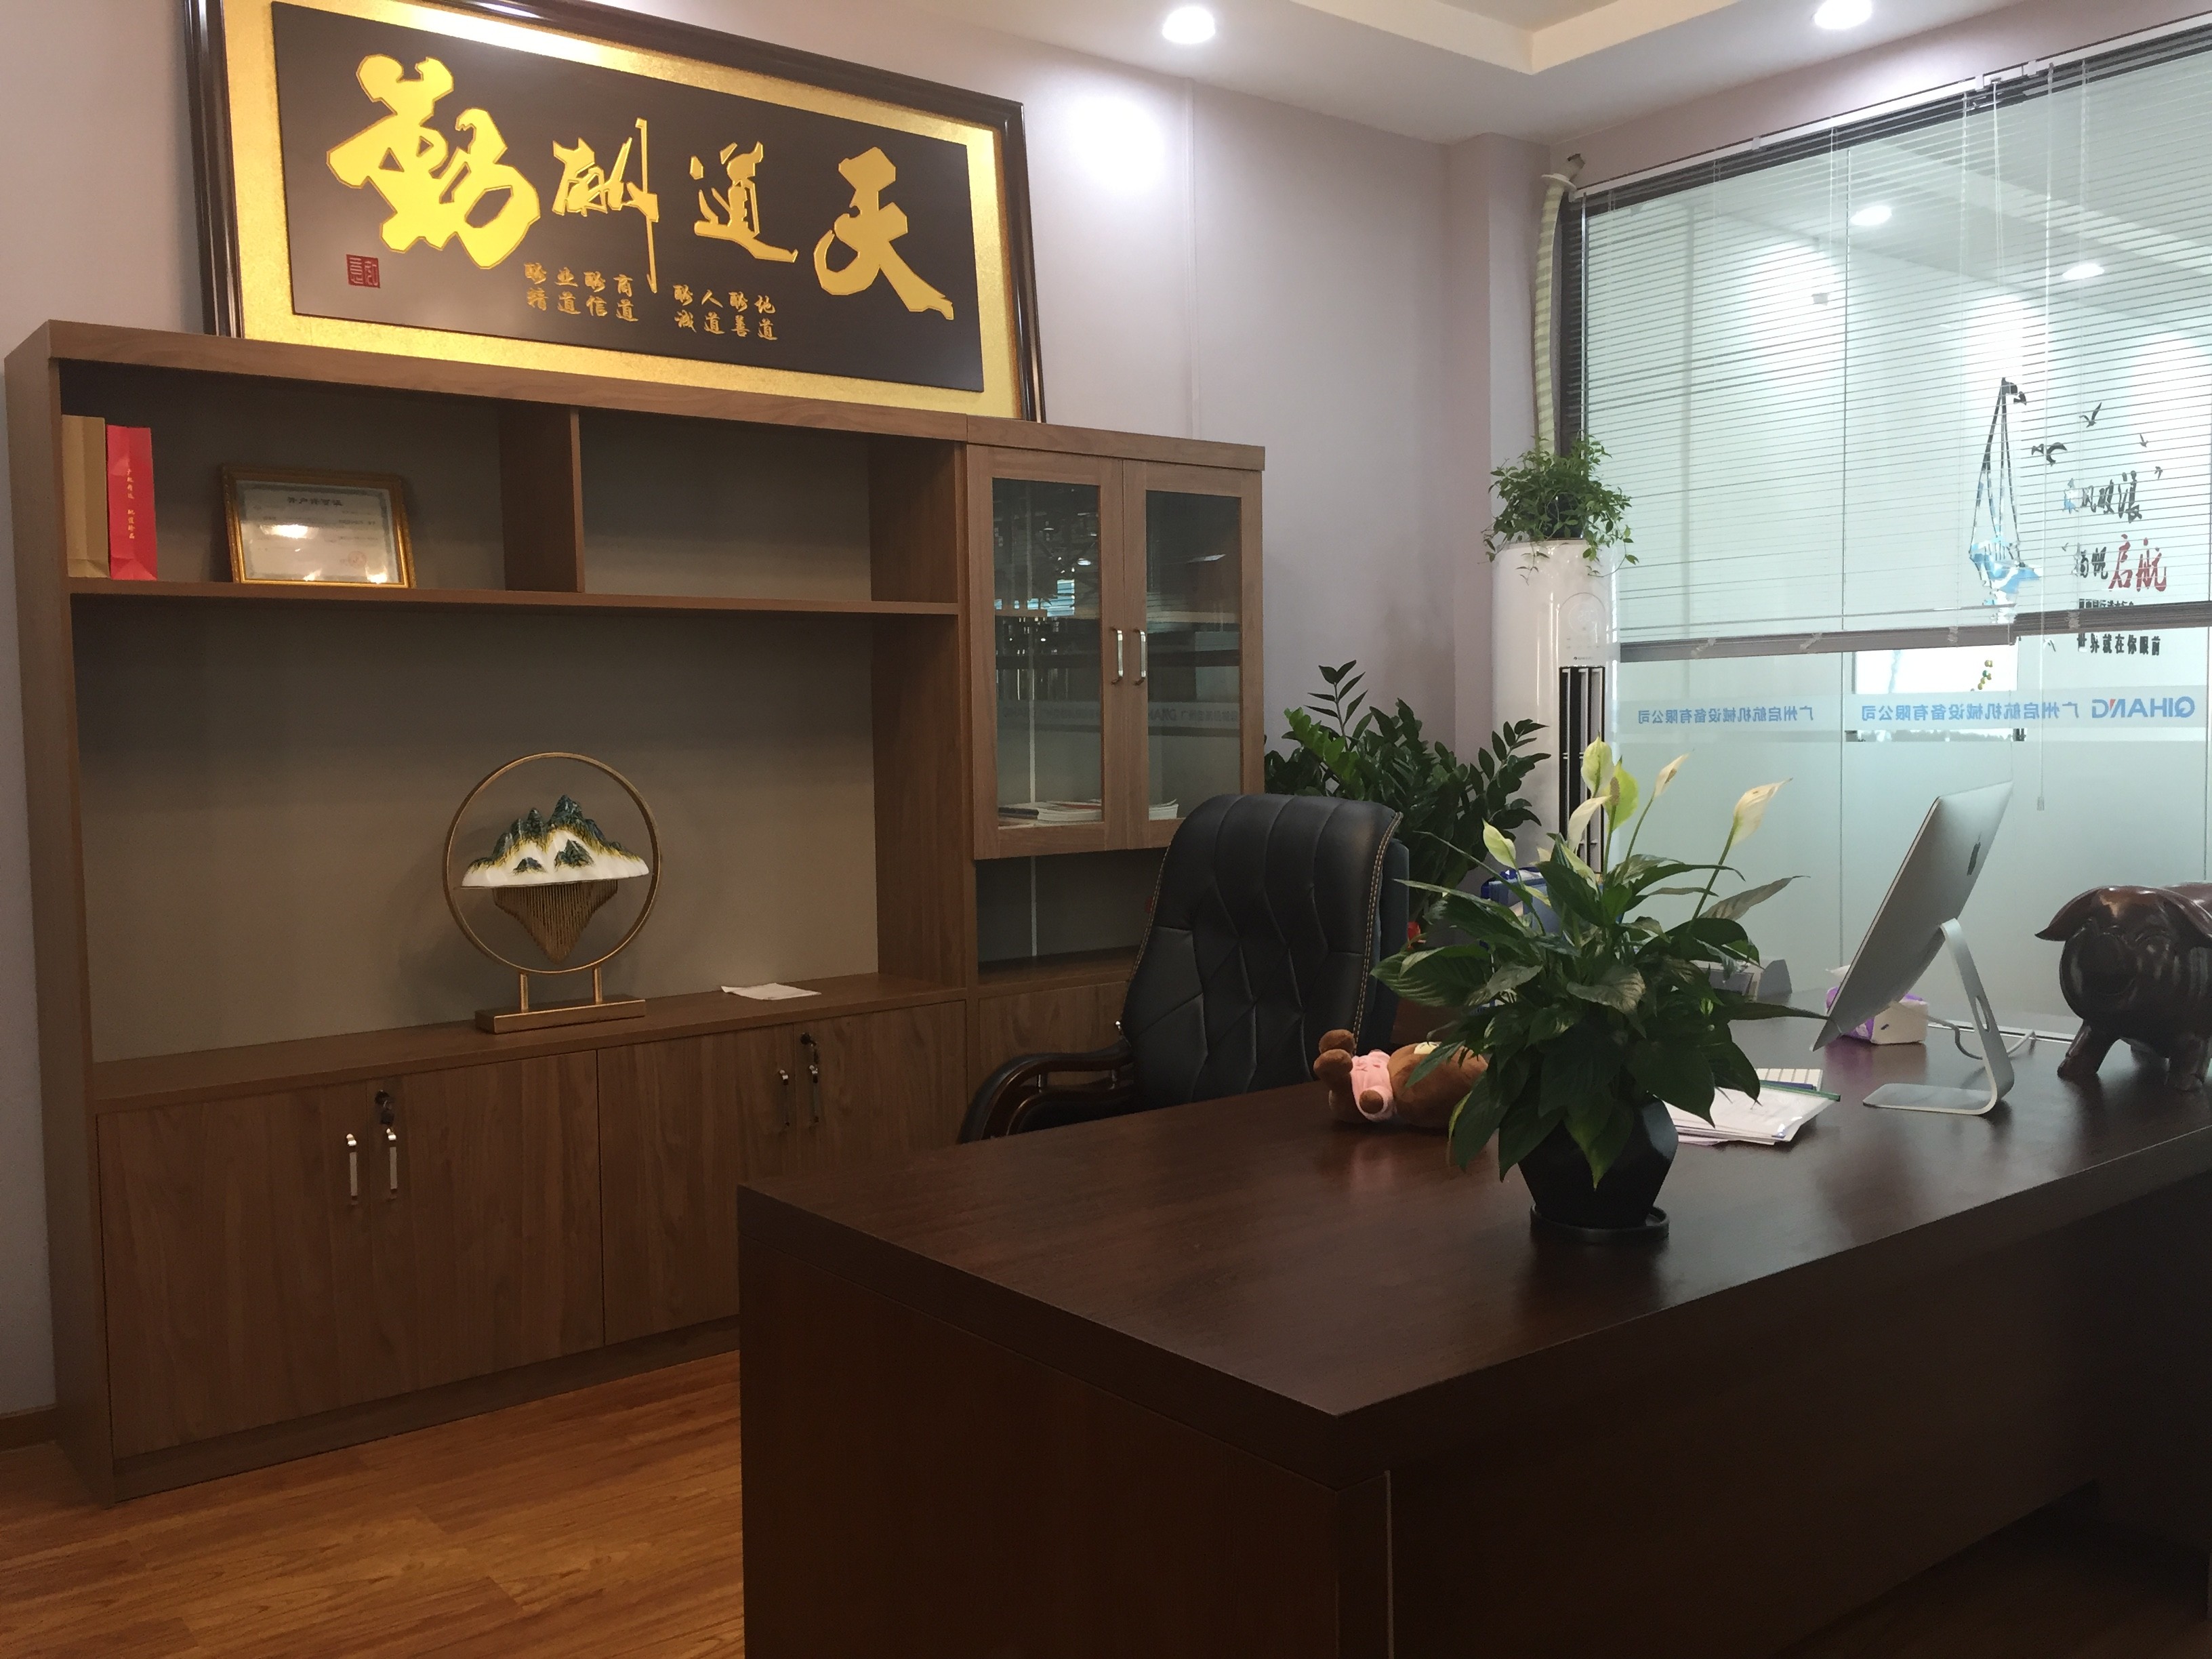 Guangzhou Qihang Machinery & Equipment Co., Ltd